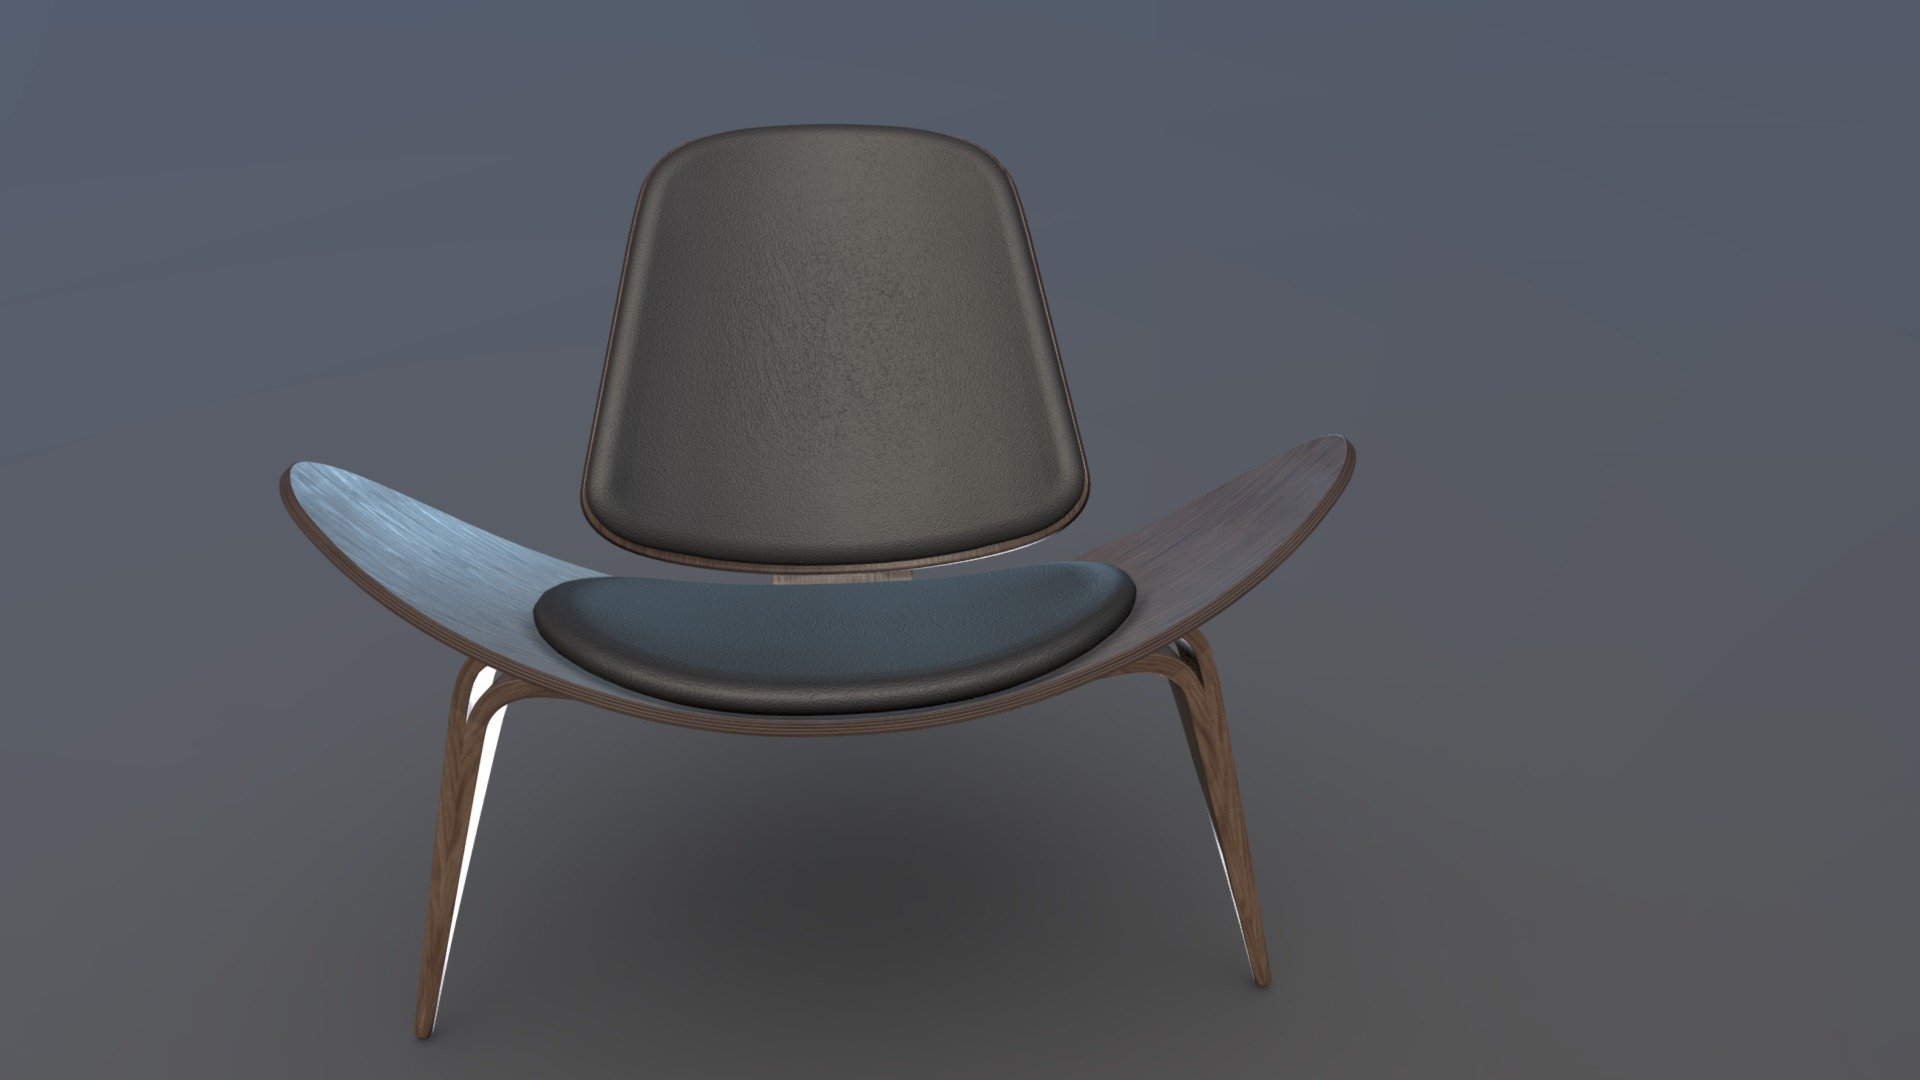 Shell Chair, designed by Hans J. Wegner.